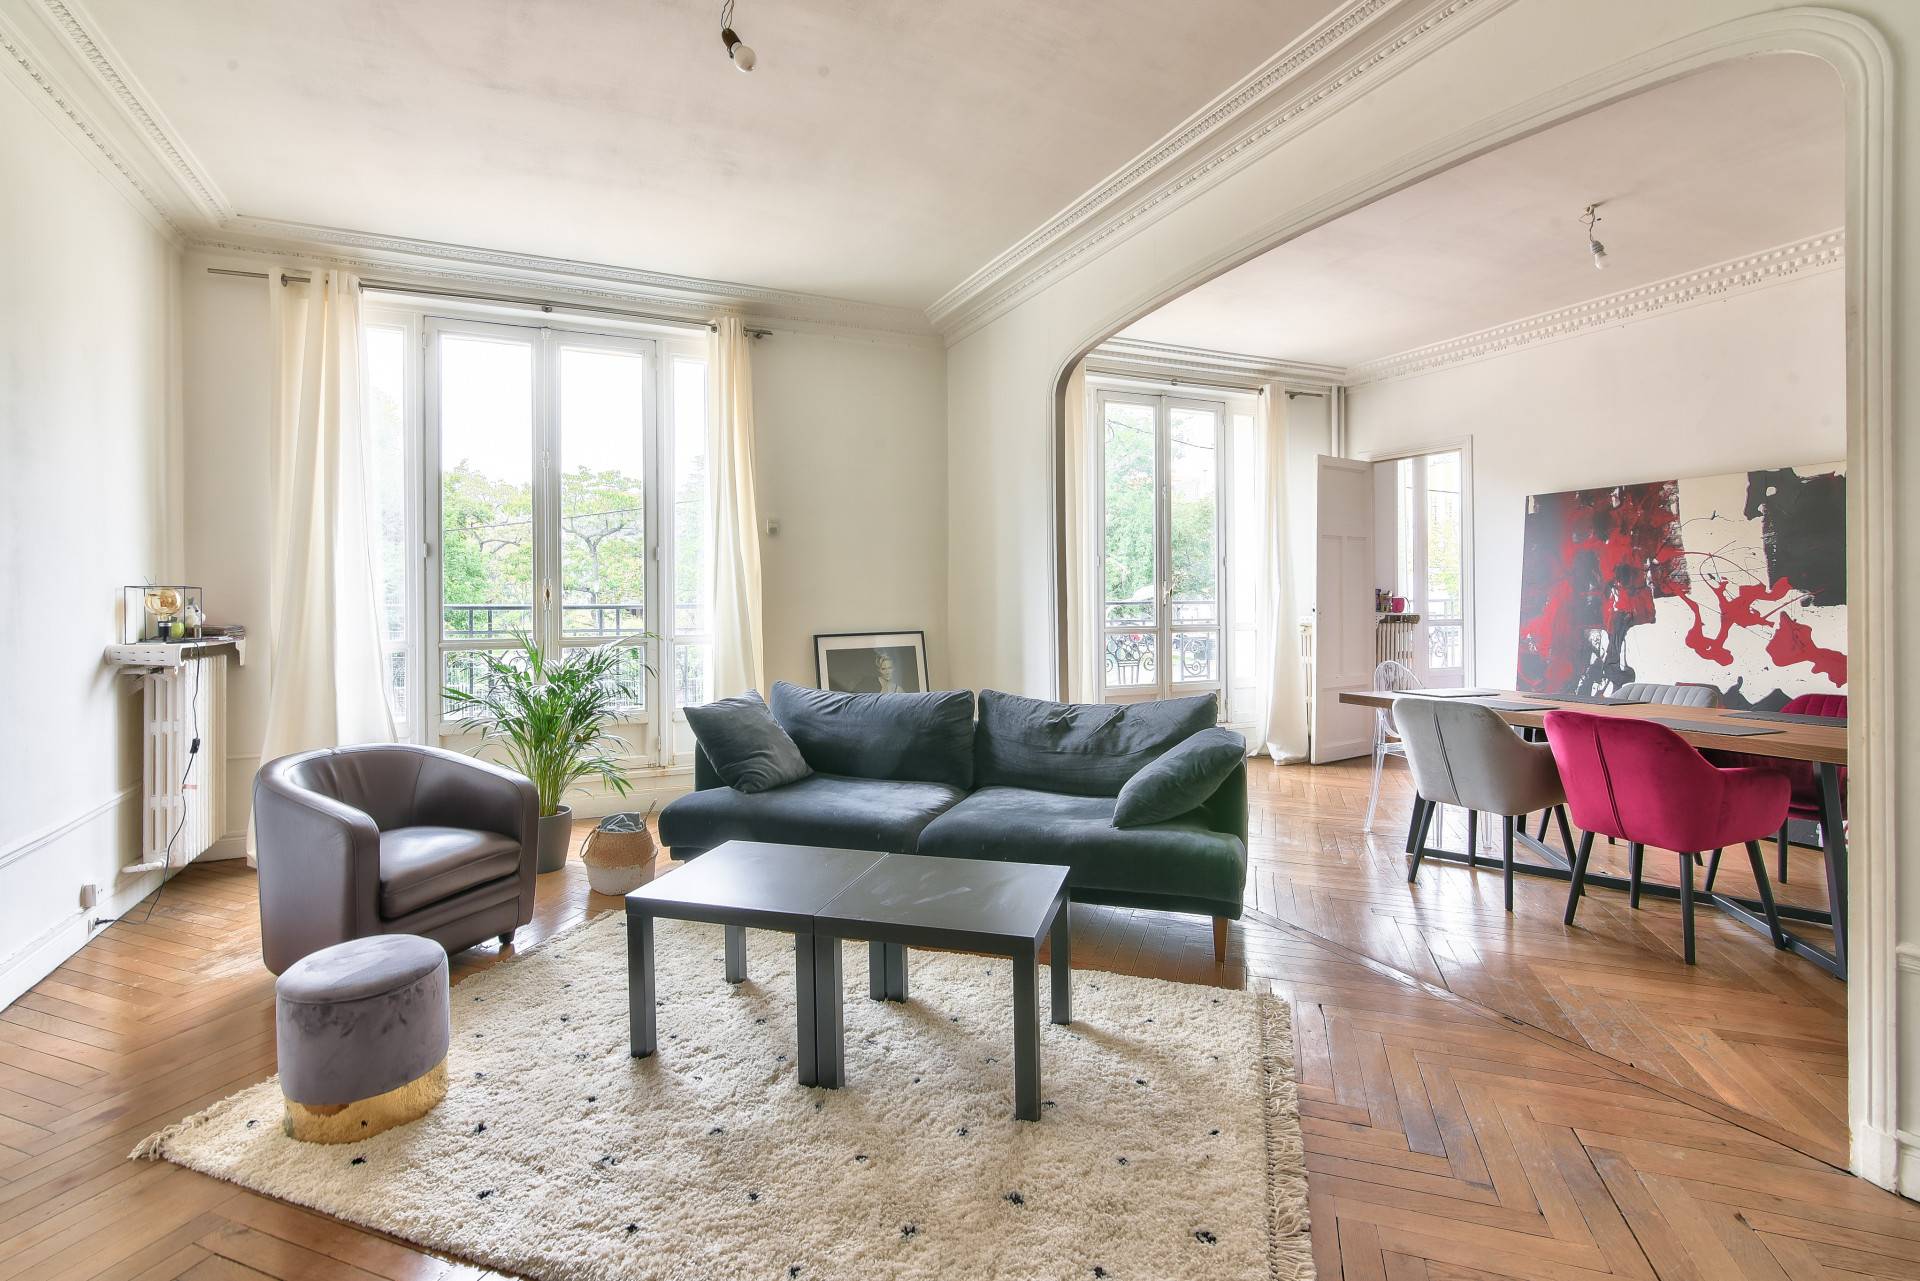 A vendre appartement familial de 143 m² face au C.E.J. courcelles Mallarmé Paris 75017